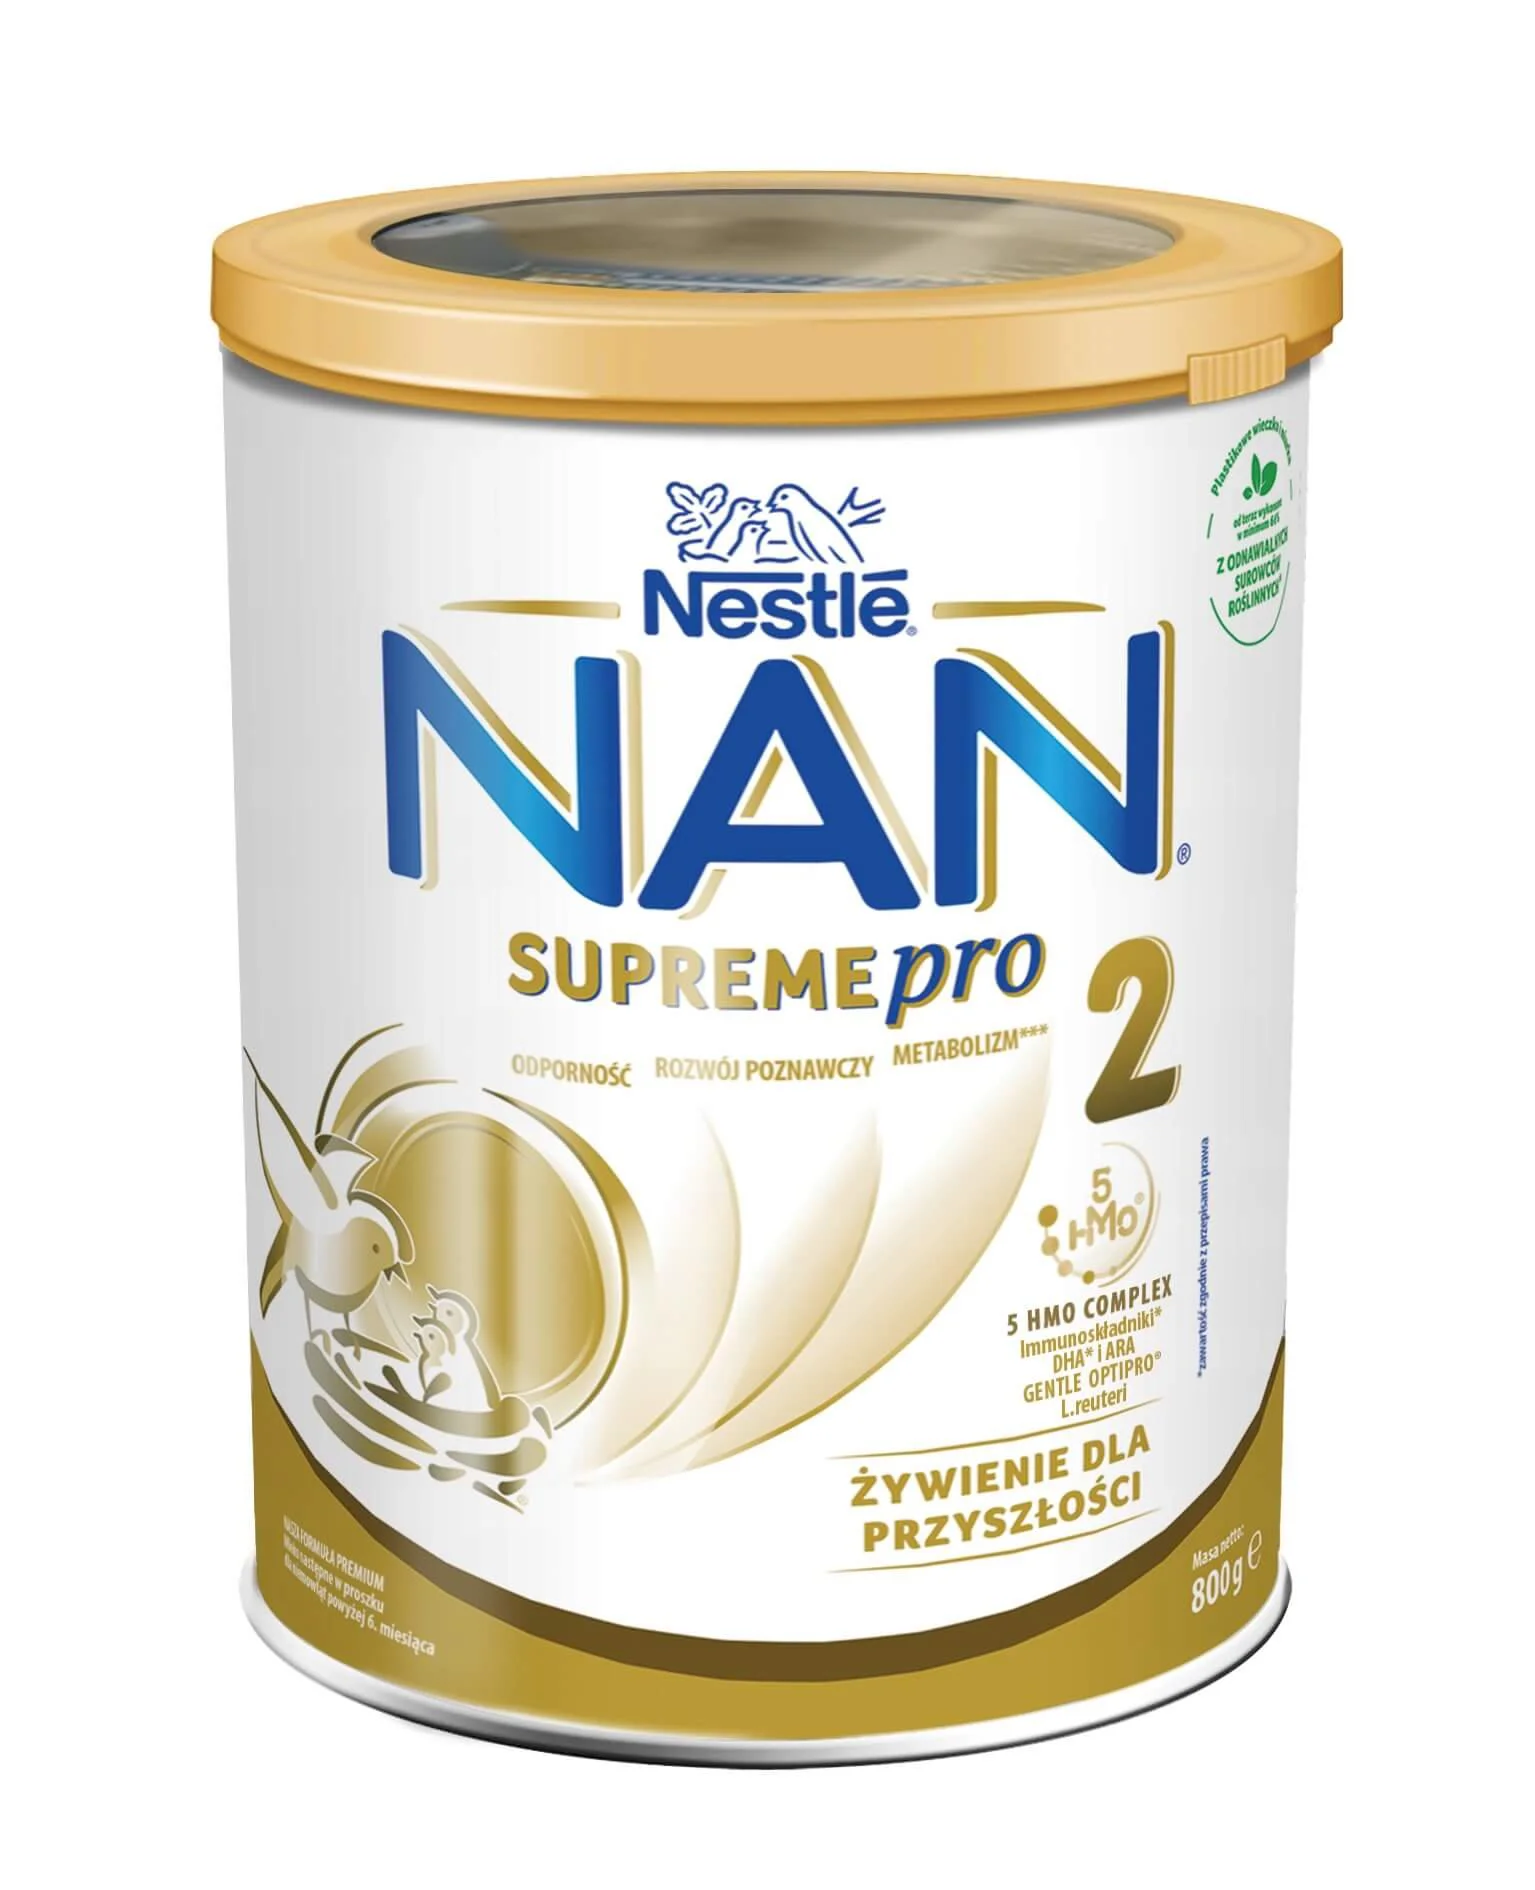 Детская молочная смесь Nestle NAN 2 Supreme Pro, 800 г